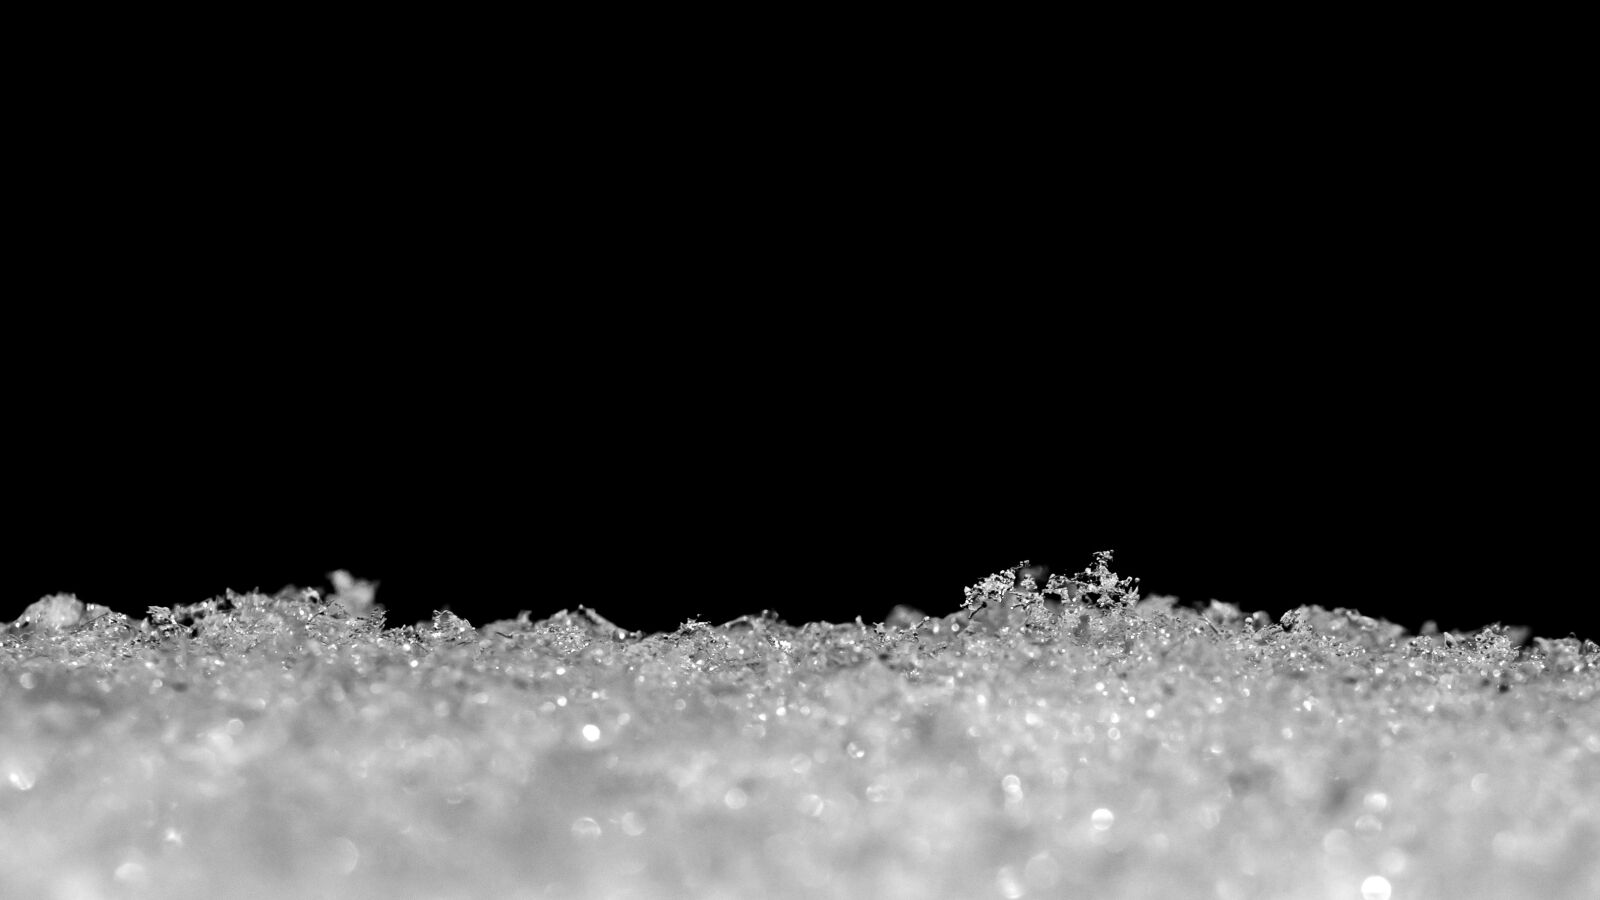 Panasonic DMC-G70 + Olympus M.Zuiko Digital ED 60mm F2.8 Macro sample photo. Winter, crystals, white photography